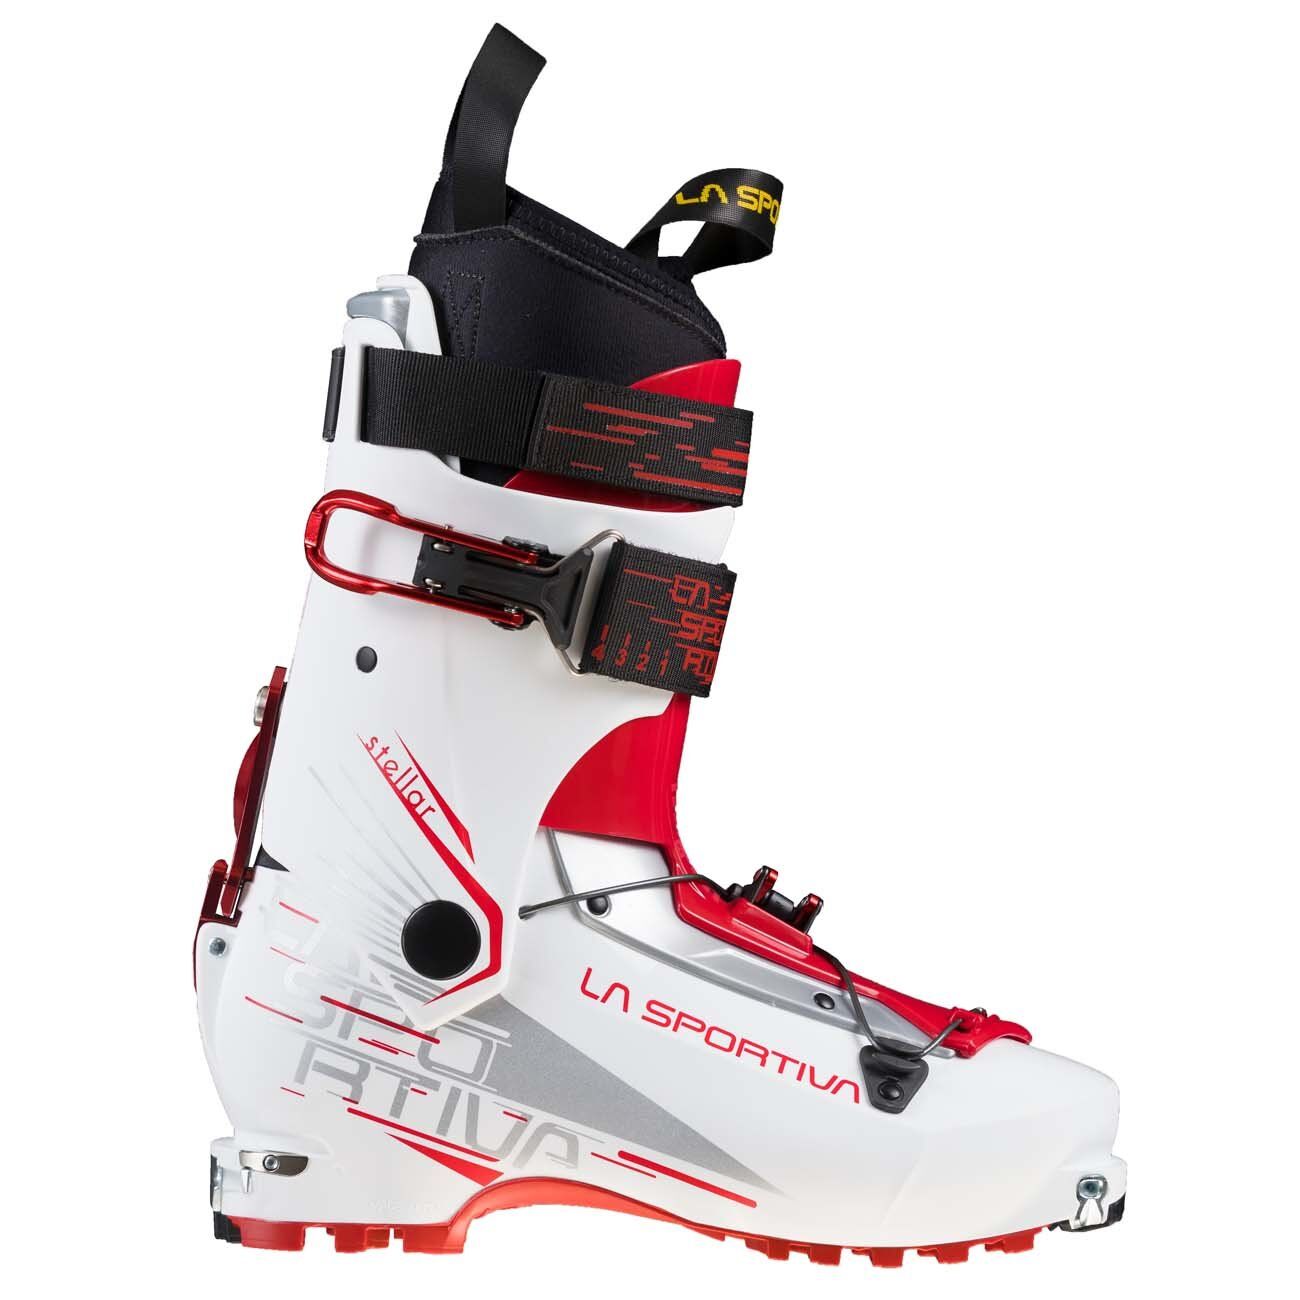 La Sportiva Stellar - Ski boots - Women's